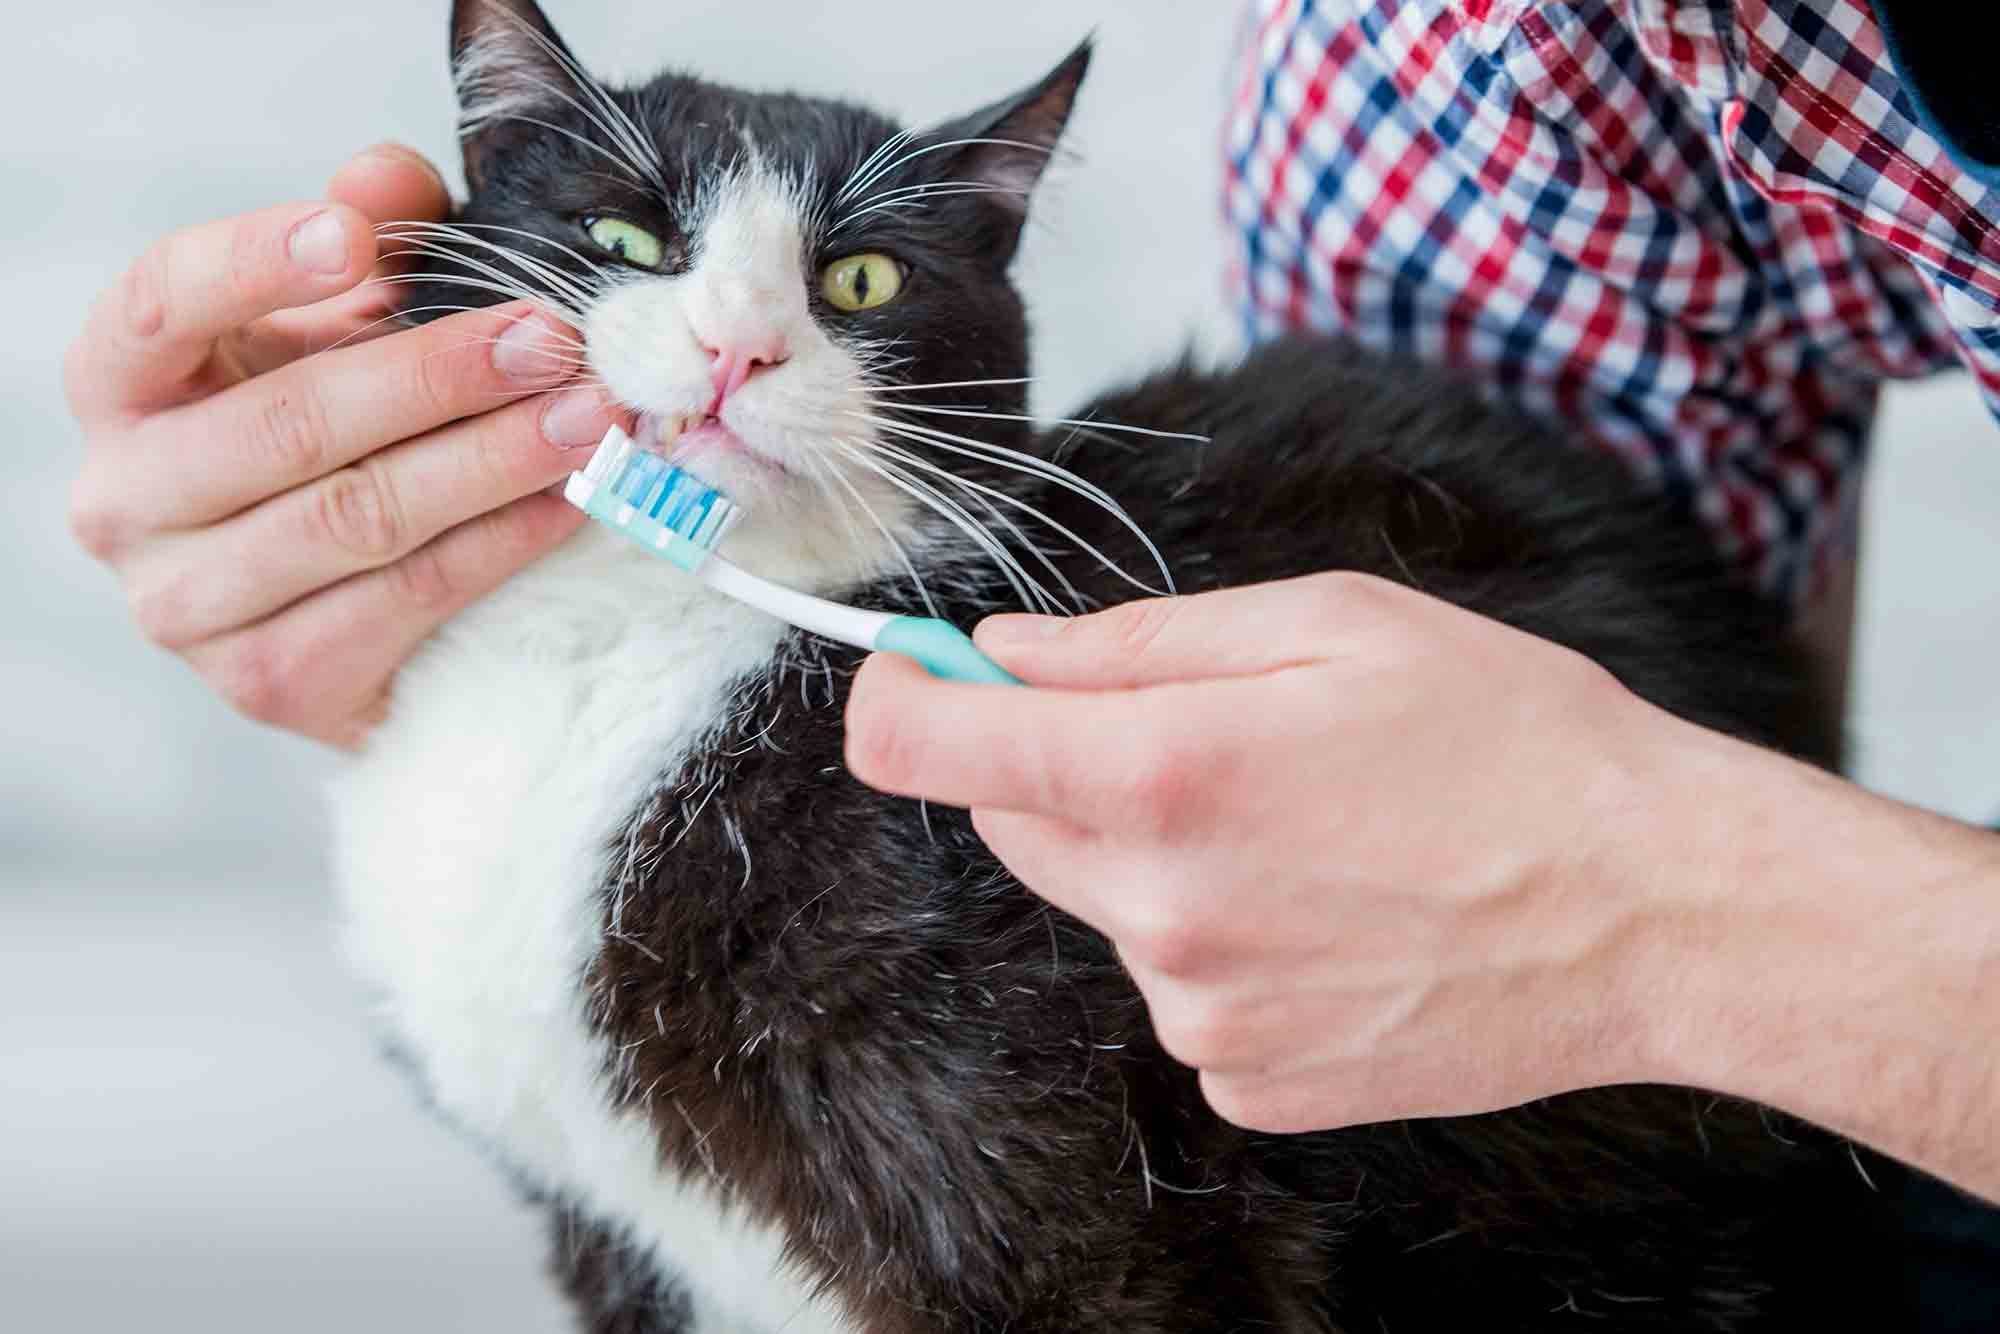 Нужно ли чистить зубы котам и кошкам? как правильно и часто чистить зубы коту и кошке в домашних условиях: советы. какой зубной пастой и щеткой почистить зубы кошке? как приучить котенка чистить зубы? какие косточки давать кошкам для чистки зубов?